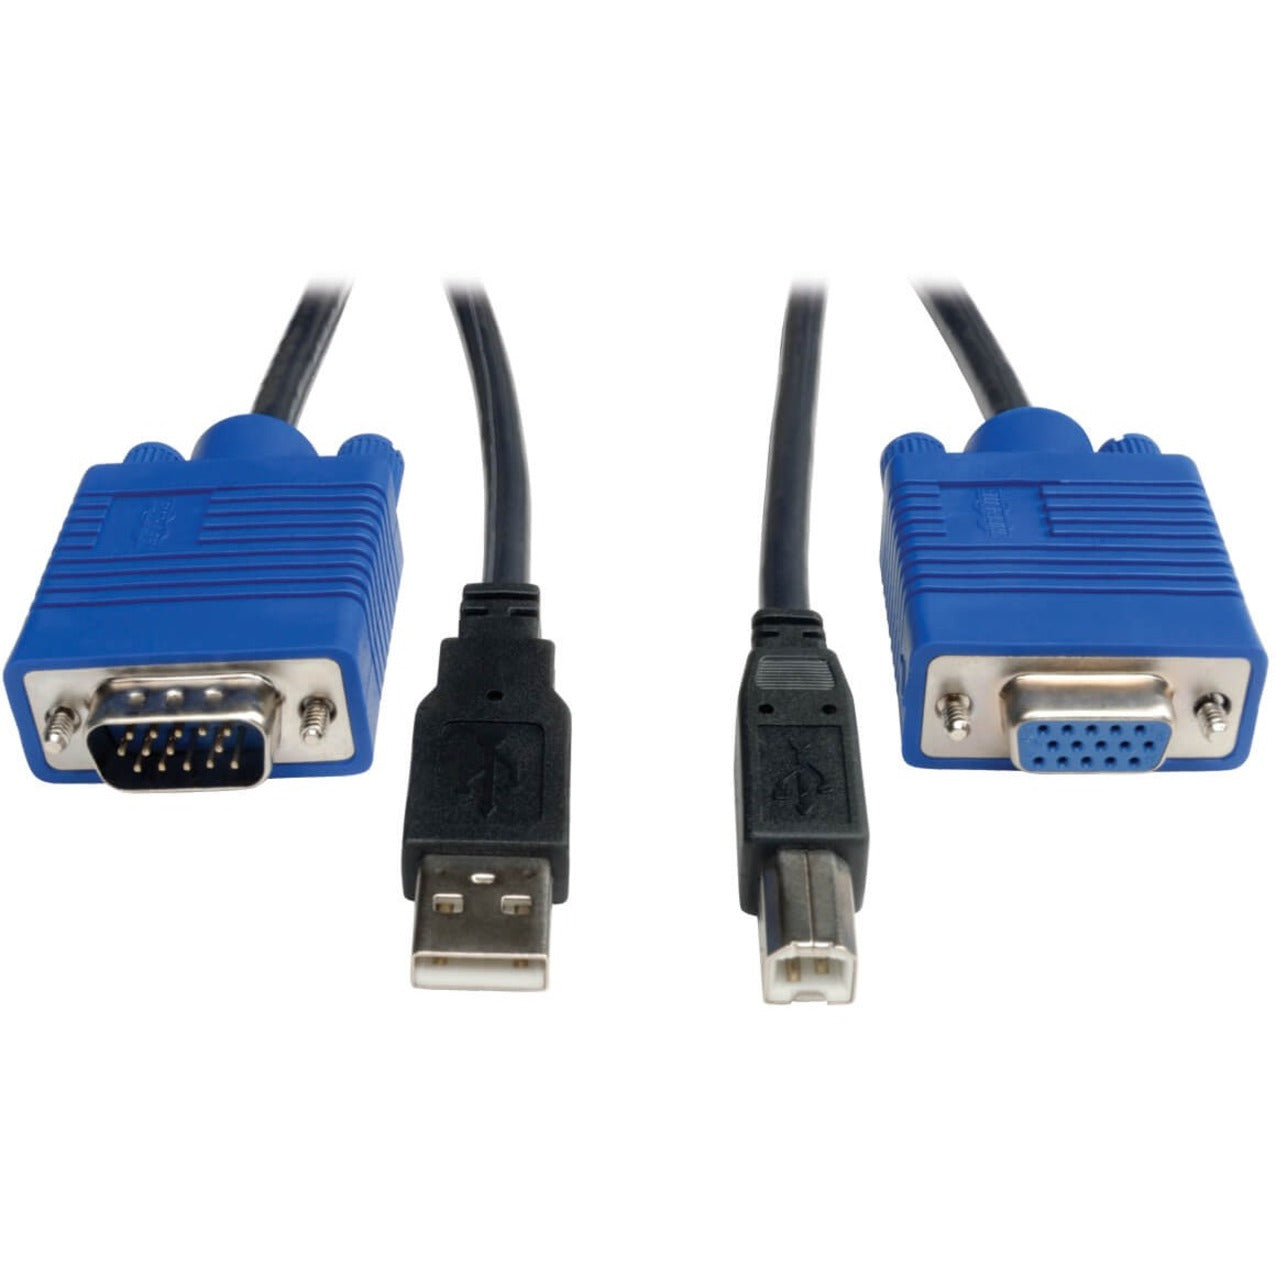 Tripp Lite P758-010 USB KVM Cable, 10 ft. - Lifetime Warranty, Black